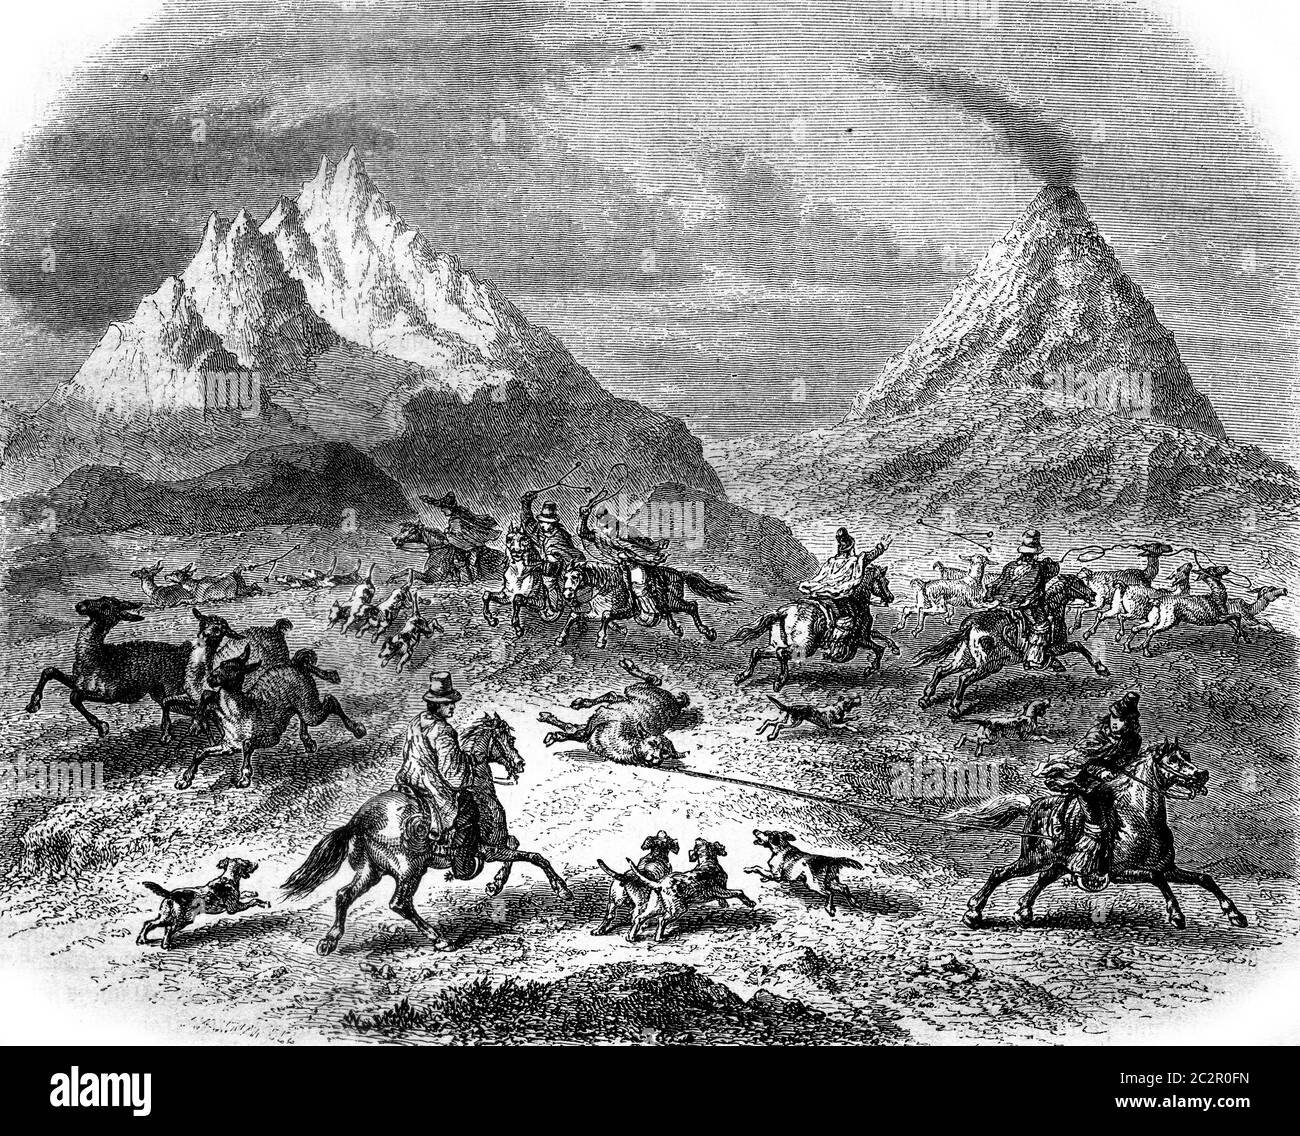 Die Jagd auf den Guanacos, in der Nähe des Vulkans Antuco, Vintage graviert Illustration. Magasin Pittoresque 1858. Stockfoto